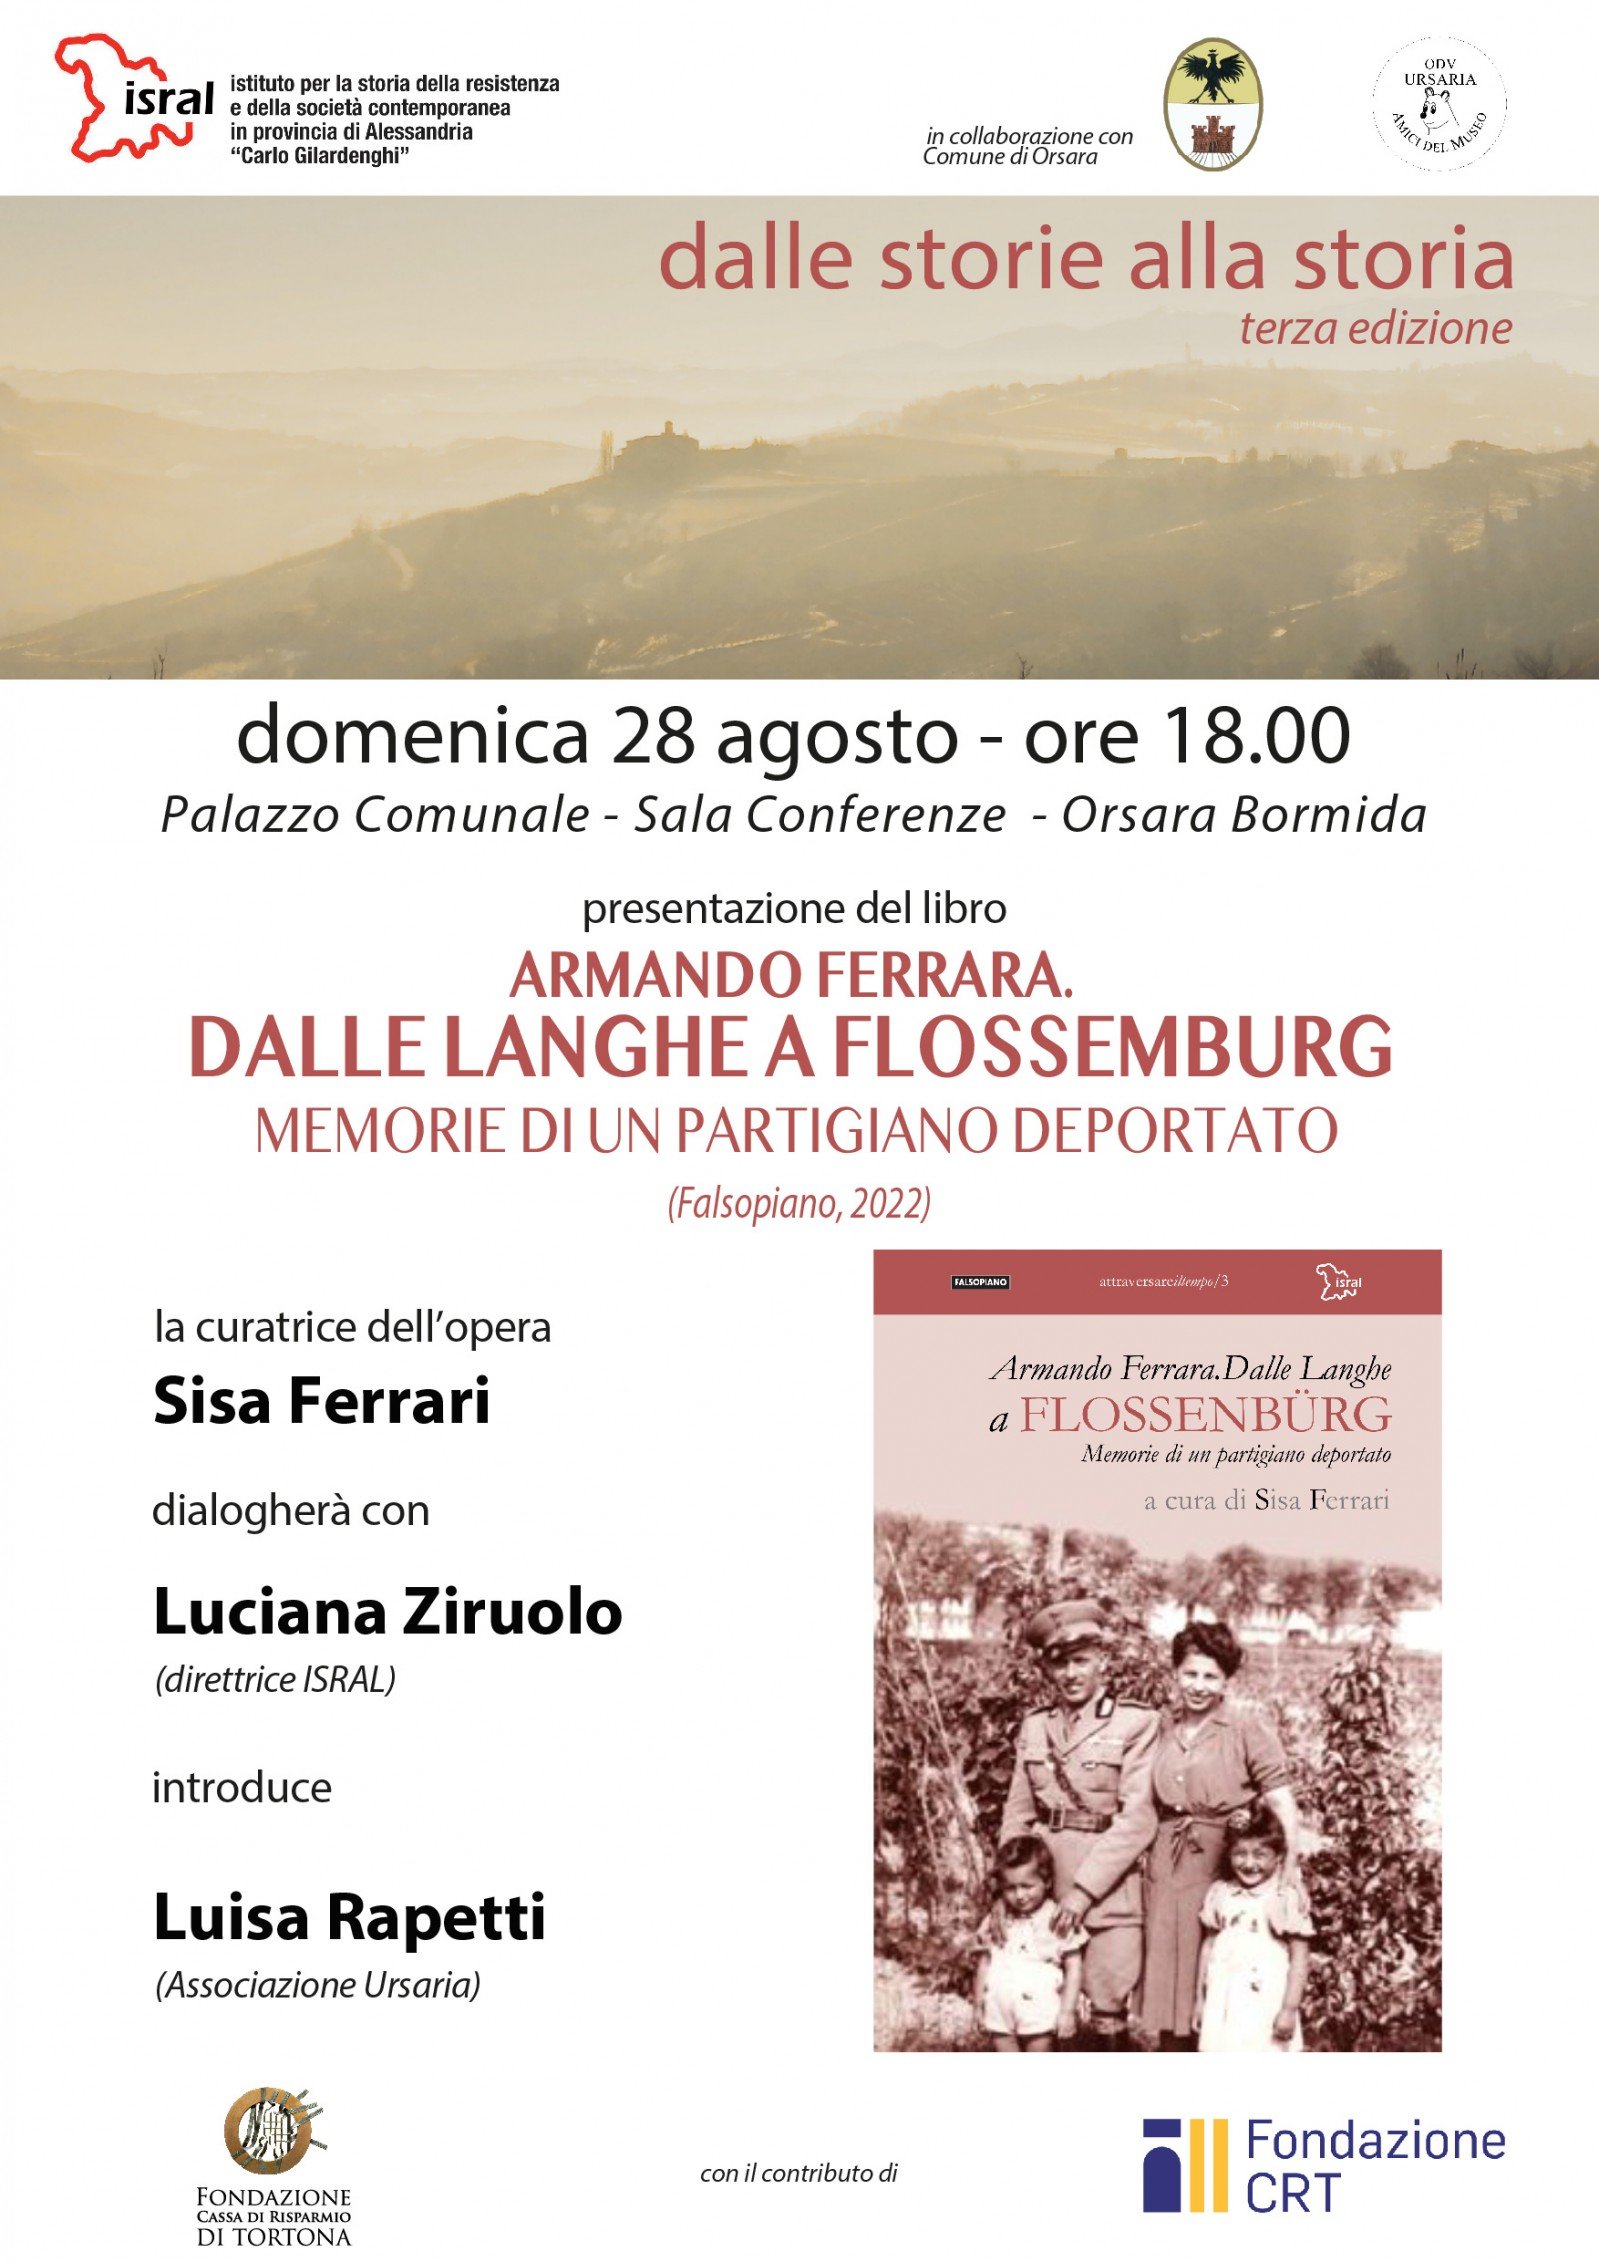 Il 20 agosto a Orsara Bormida la presentazione del libro sul partigiano Armando Ferrara